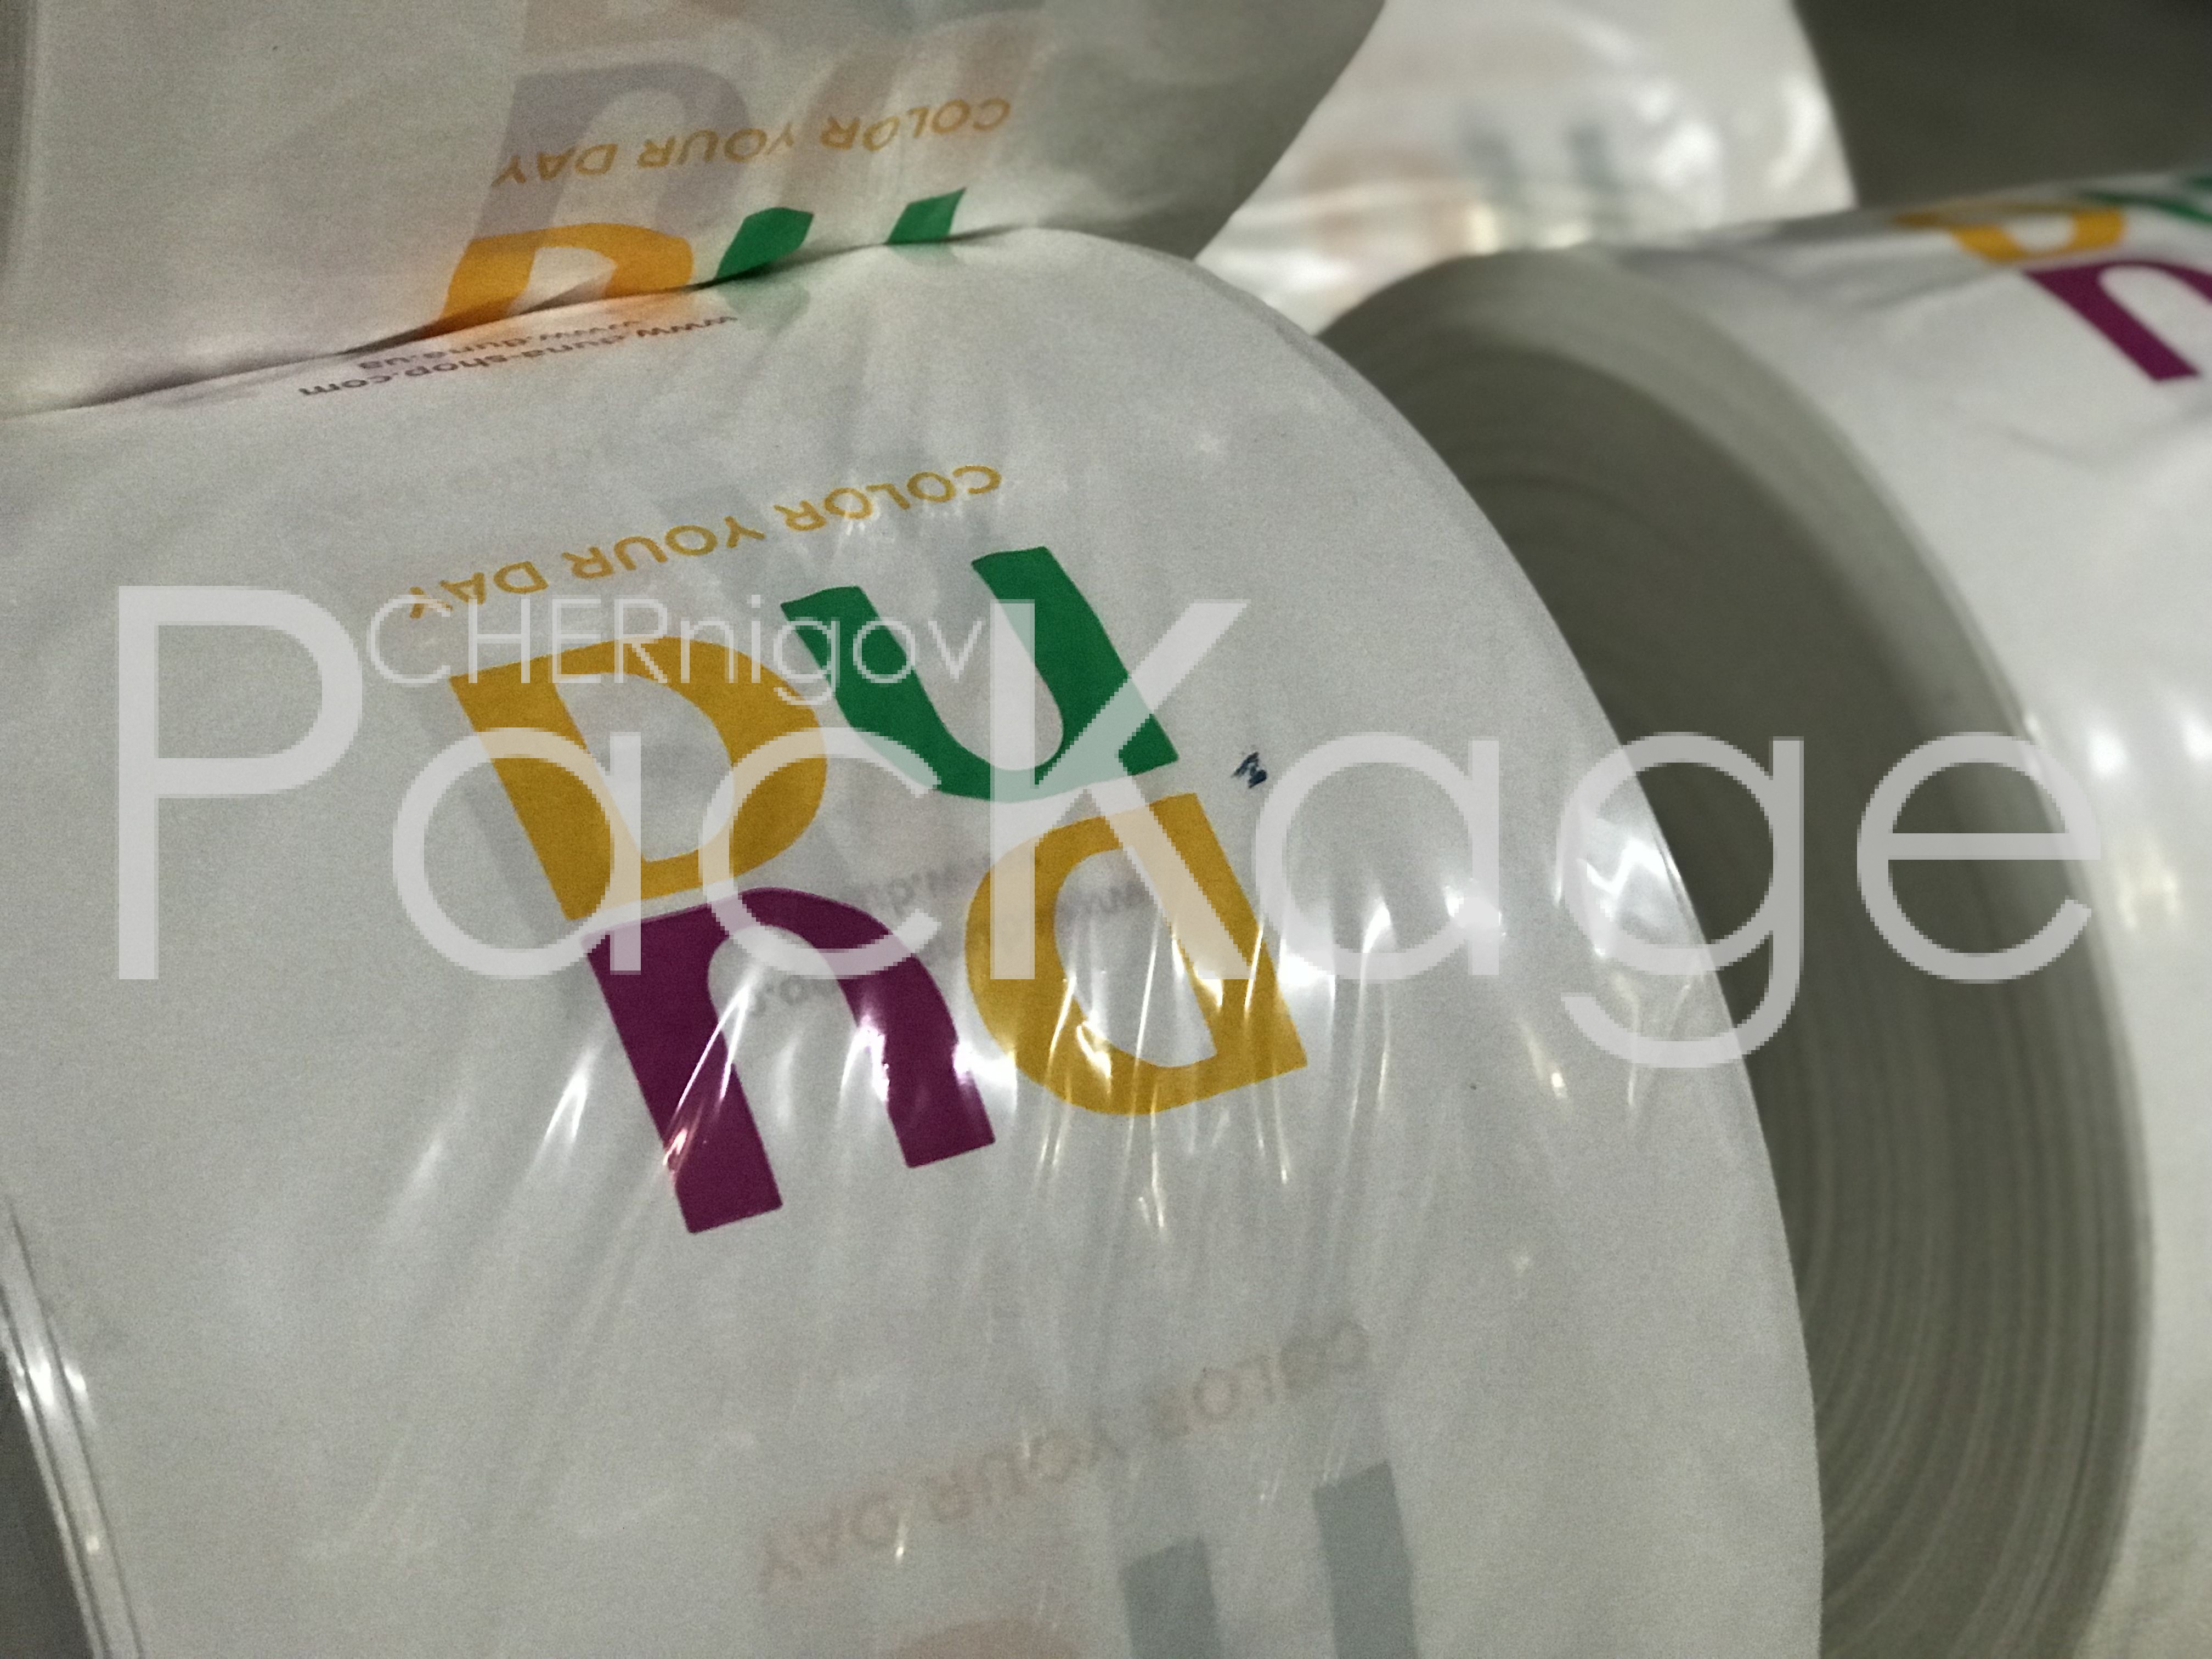 Печать на пакетах полиэтиленовых Chernigov Package - Photo IMG_5616